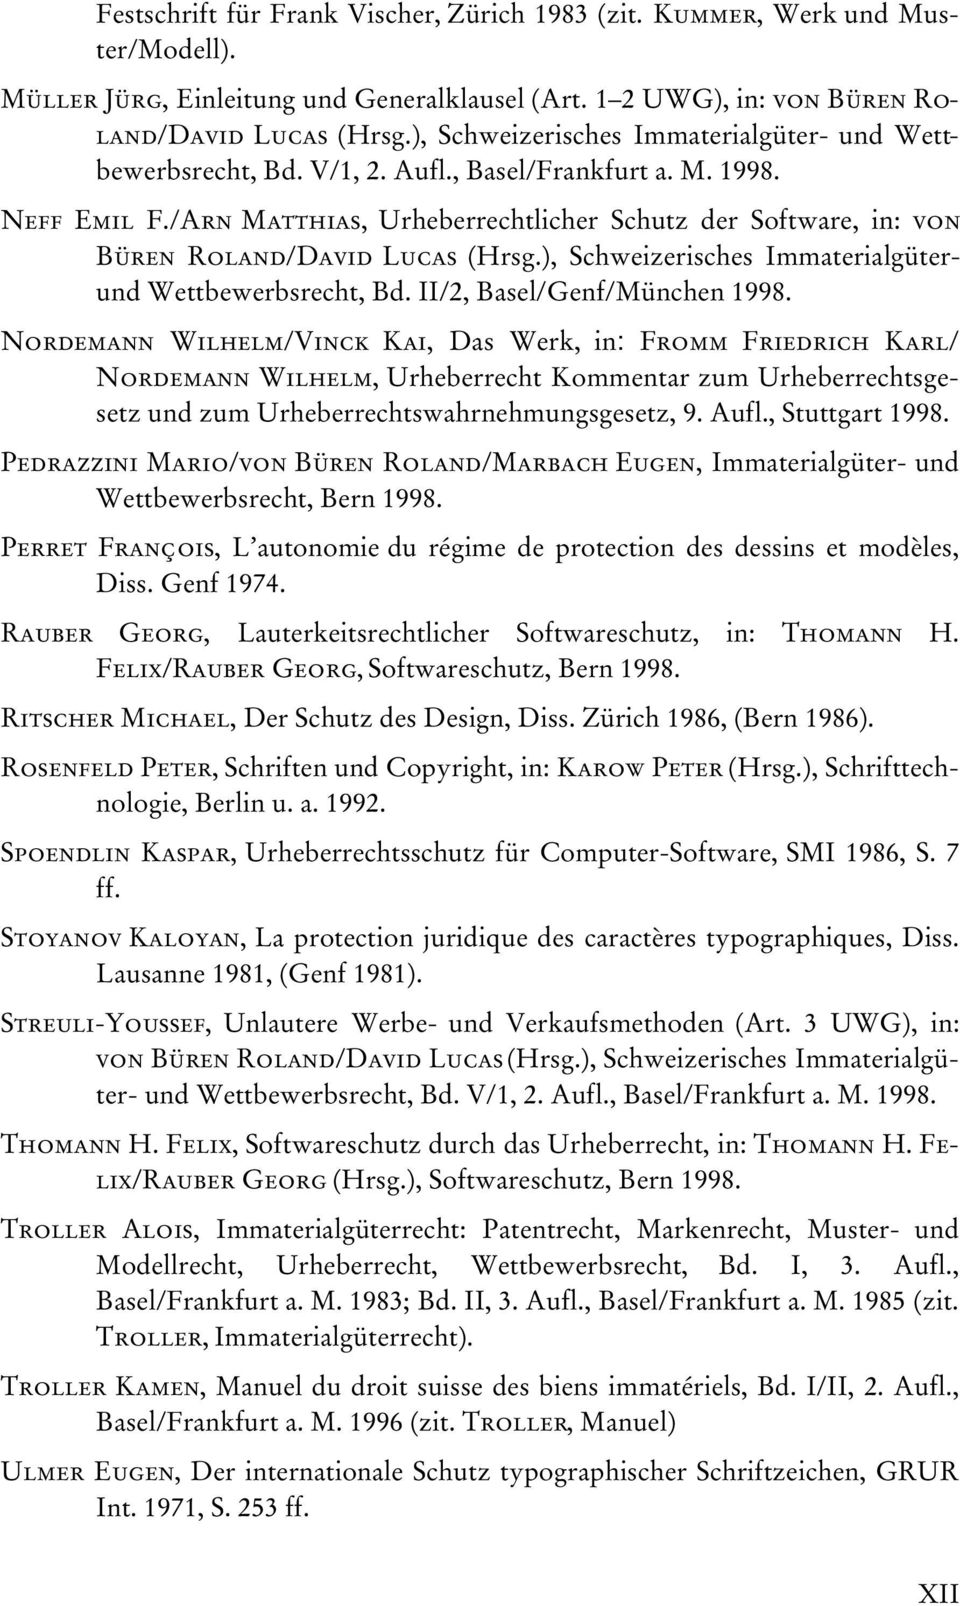 /Arn Matthias, Urheberrechtlicher Schutz der Software, in: von Büren Roland/David Lucas (Hrsg.), Schweizerisches Immaterialgüterund Wettbewerbsrecht, Bd. II/2, Basel/Genf/München 1998.